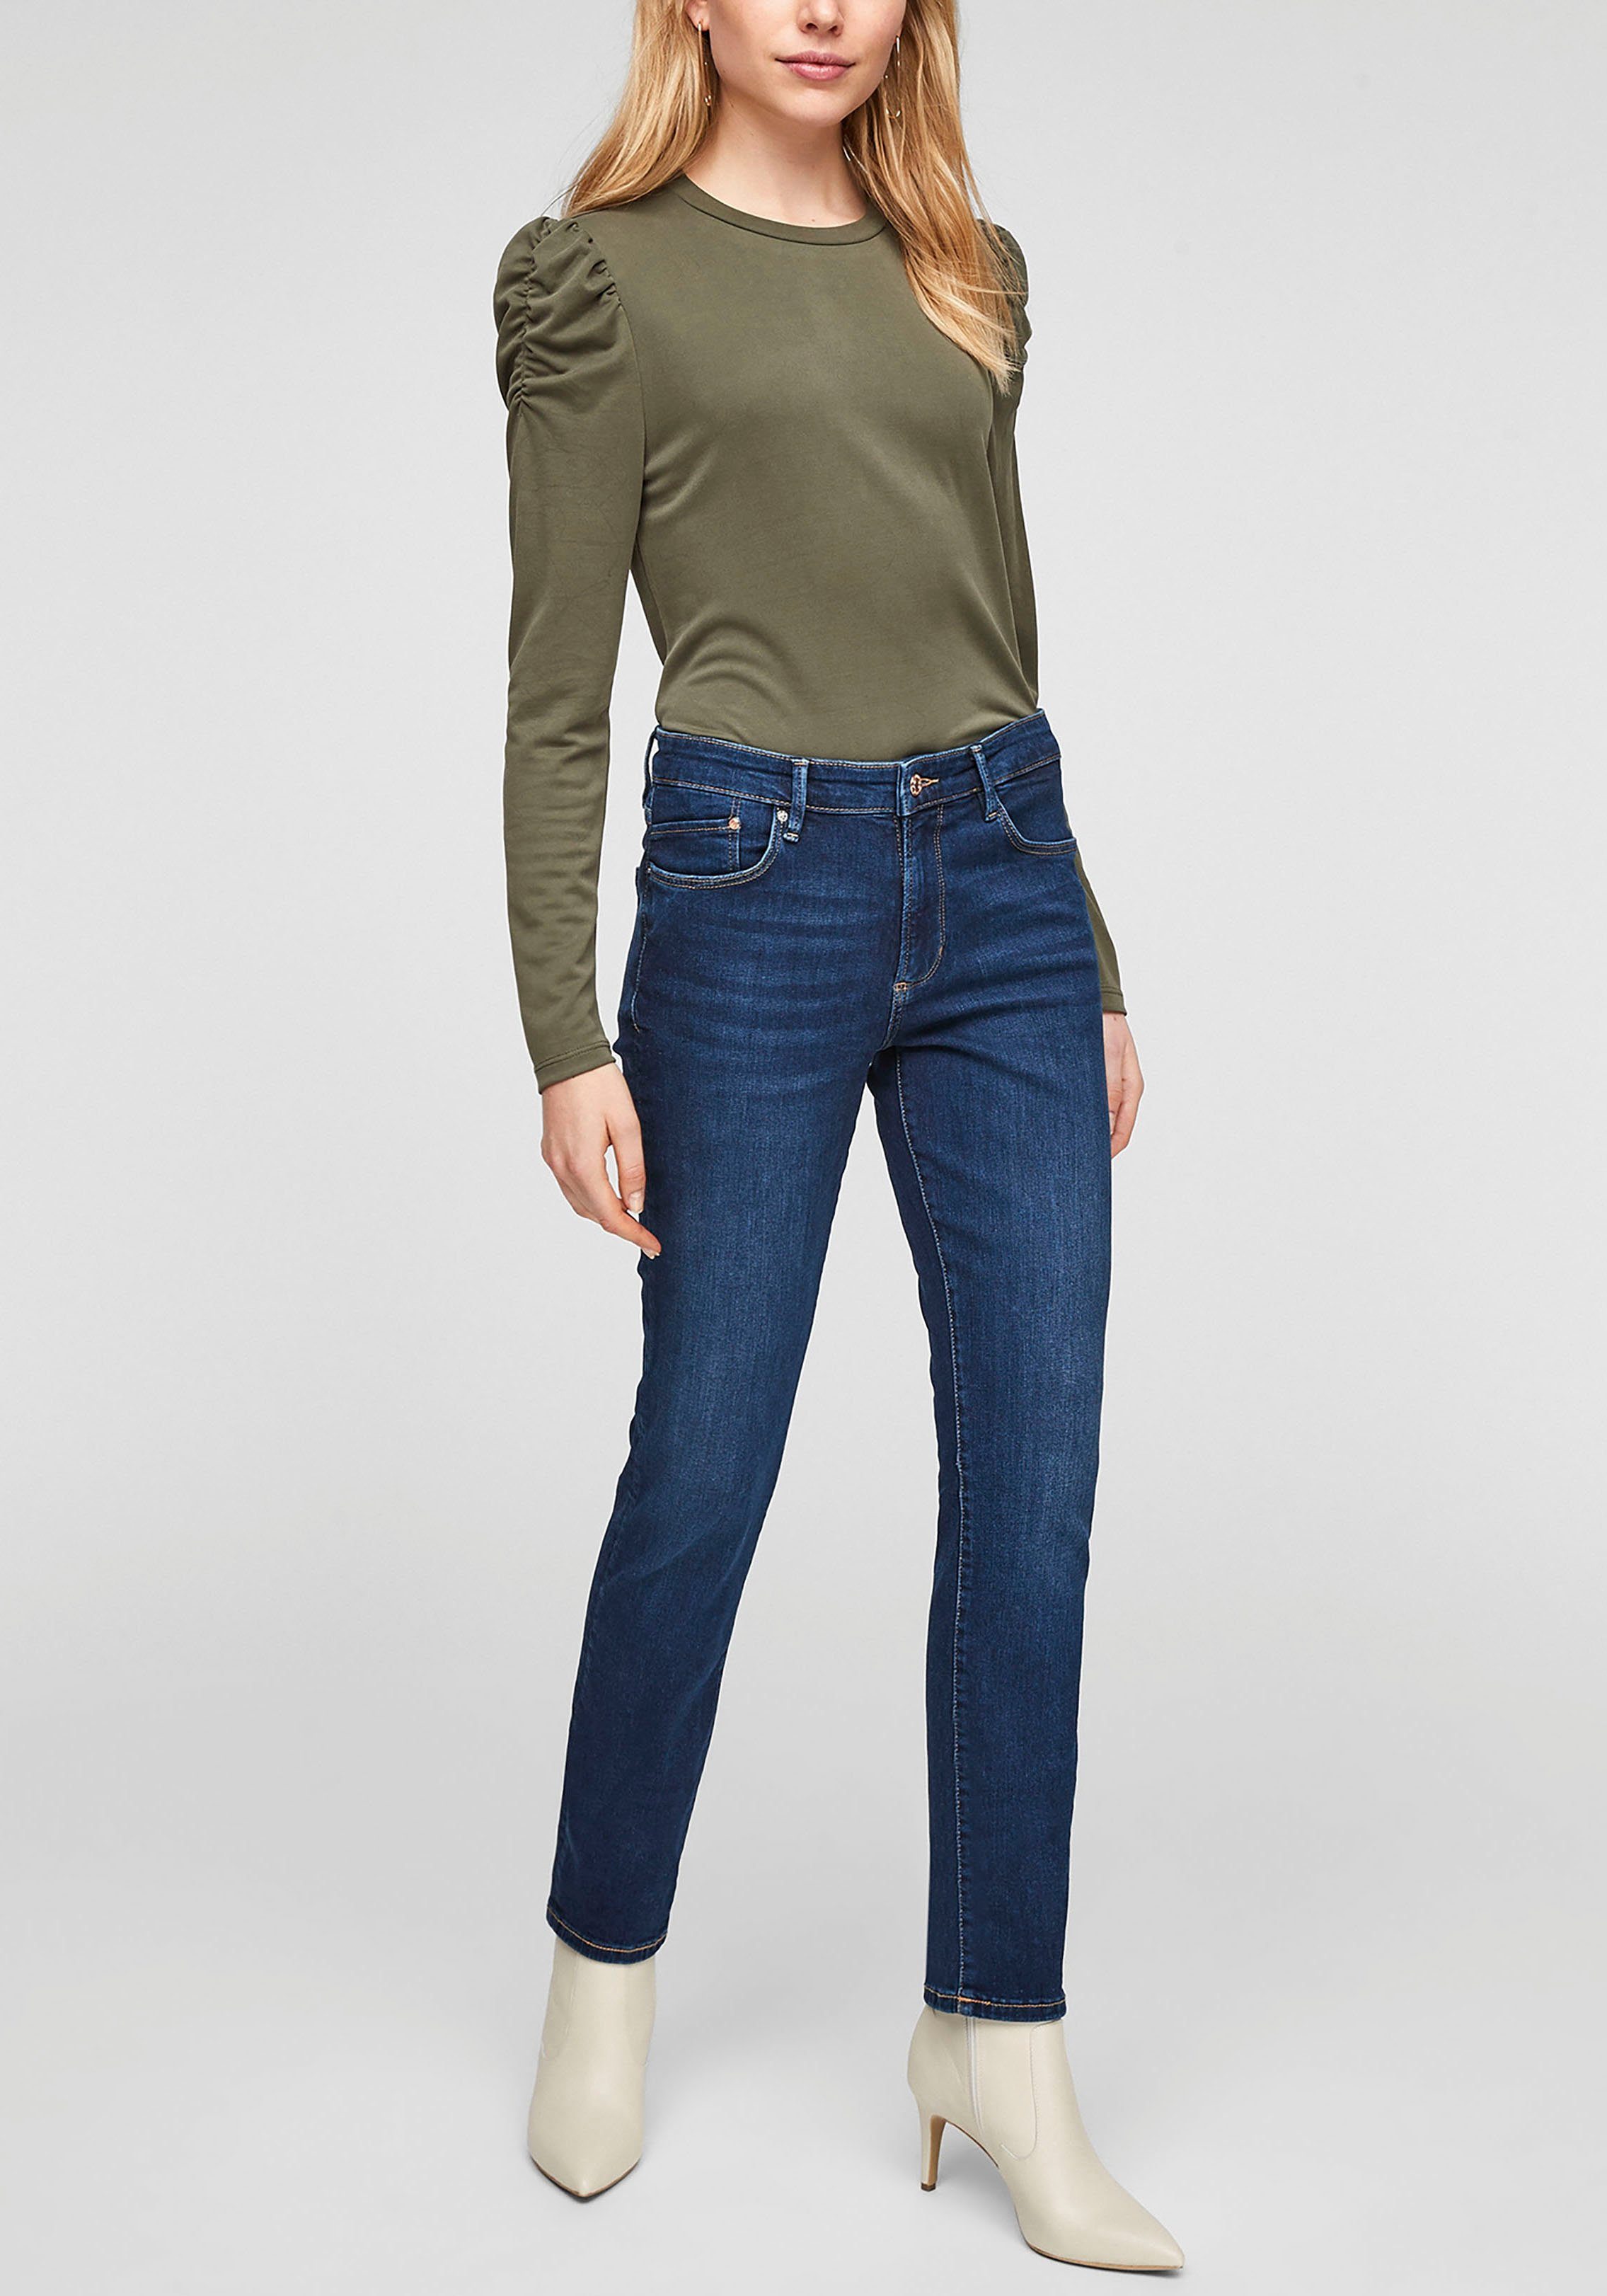 Form Betsy s.Oliver 5-Pocket Slim-fit-Jeans Basic dark-blue in